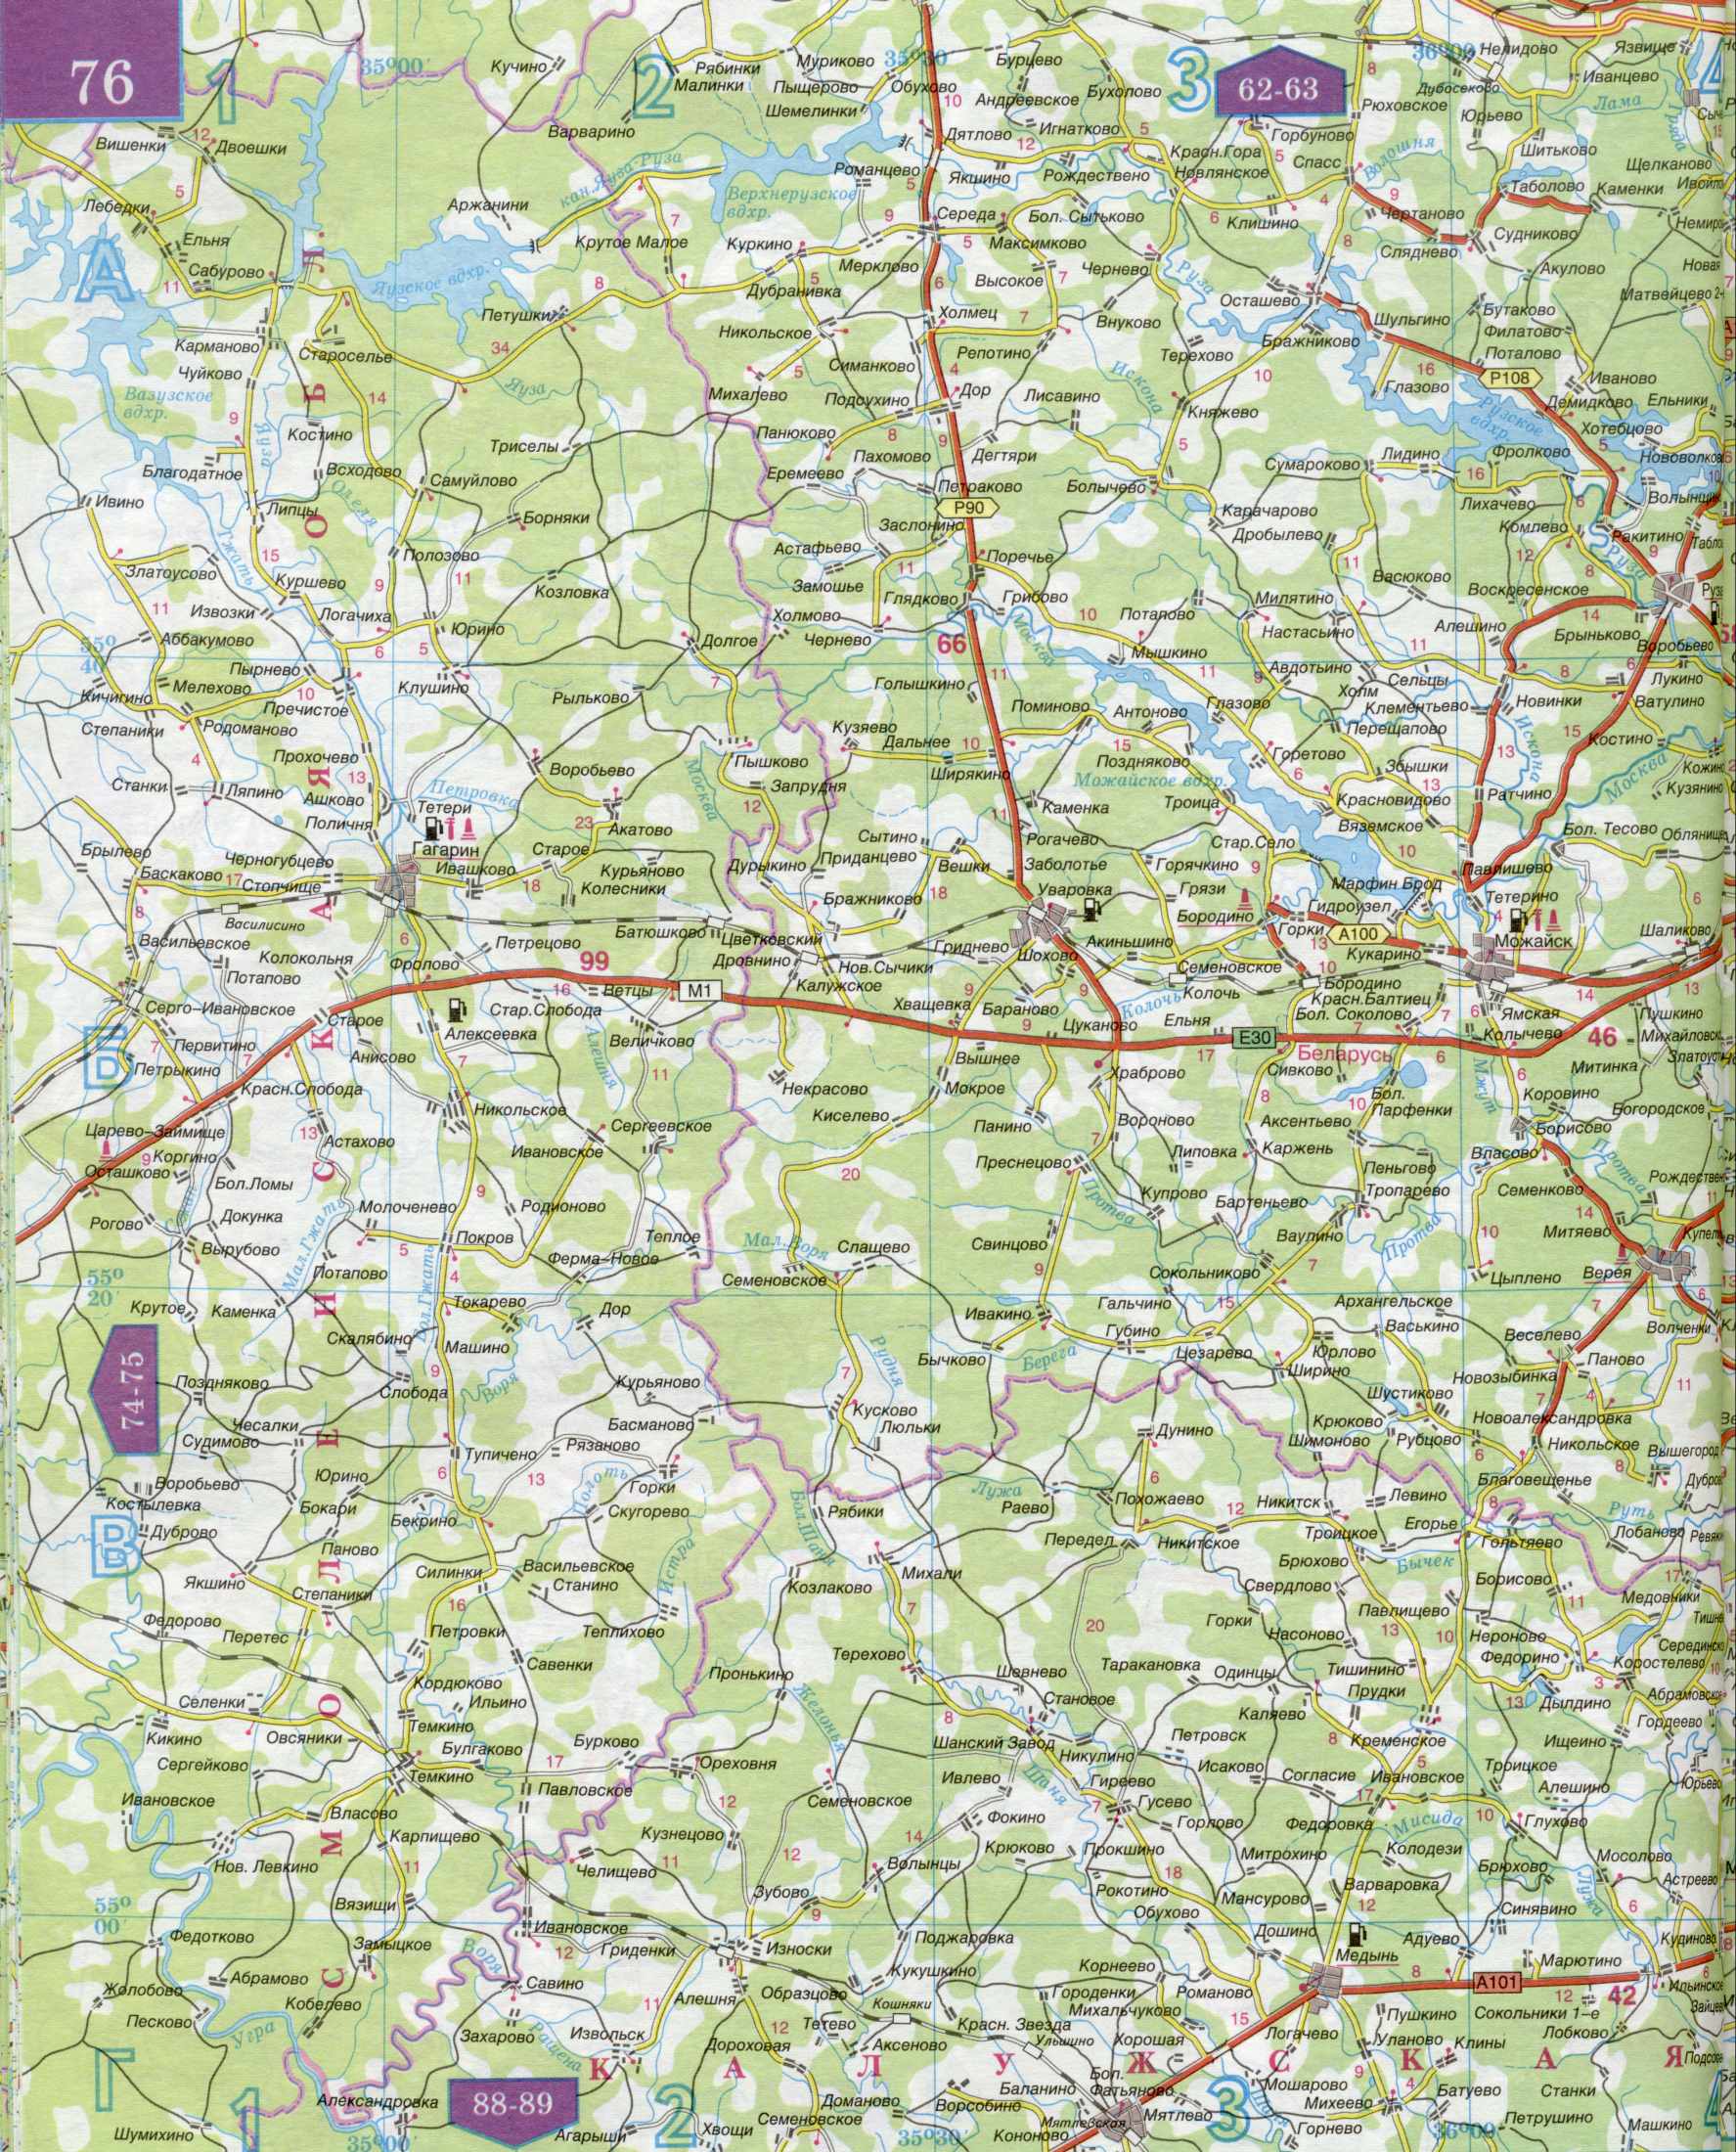 Карта автомобильных дорог Московской области 1см=5км. Подробная карта автомобильных дорог  - Московская область и прилегающие территории. Скачать бесплатно, A1 - 